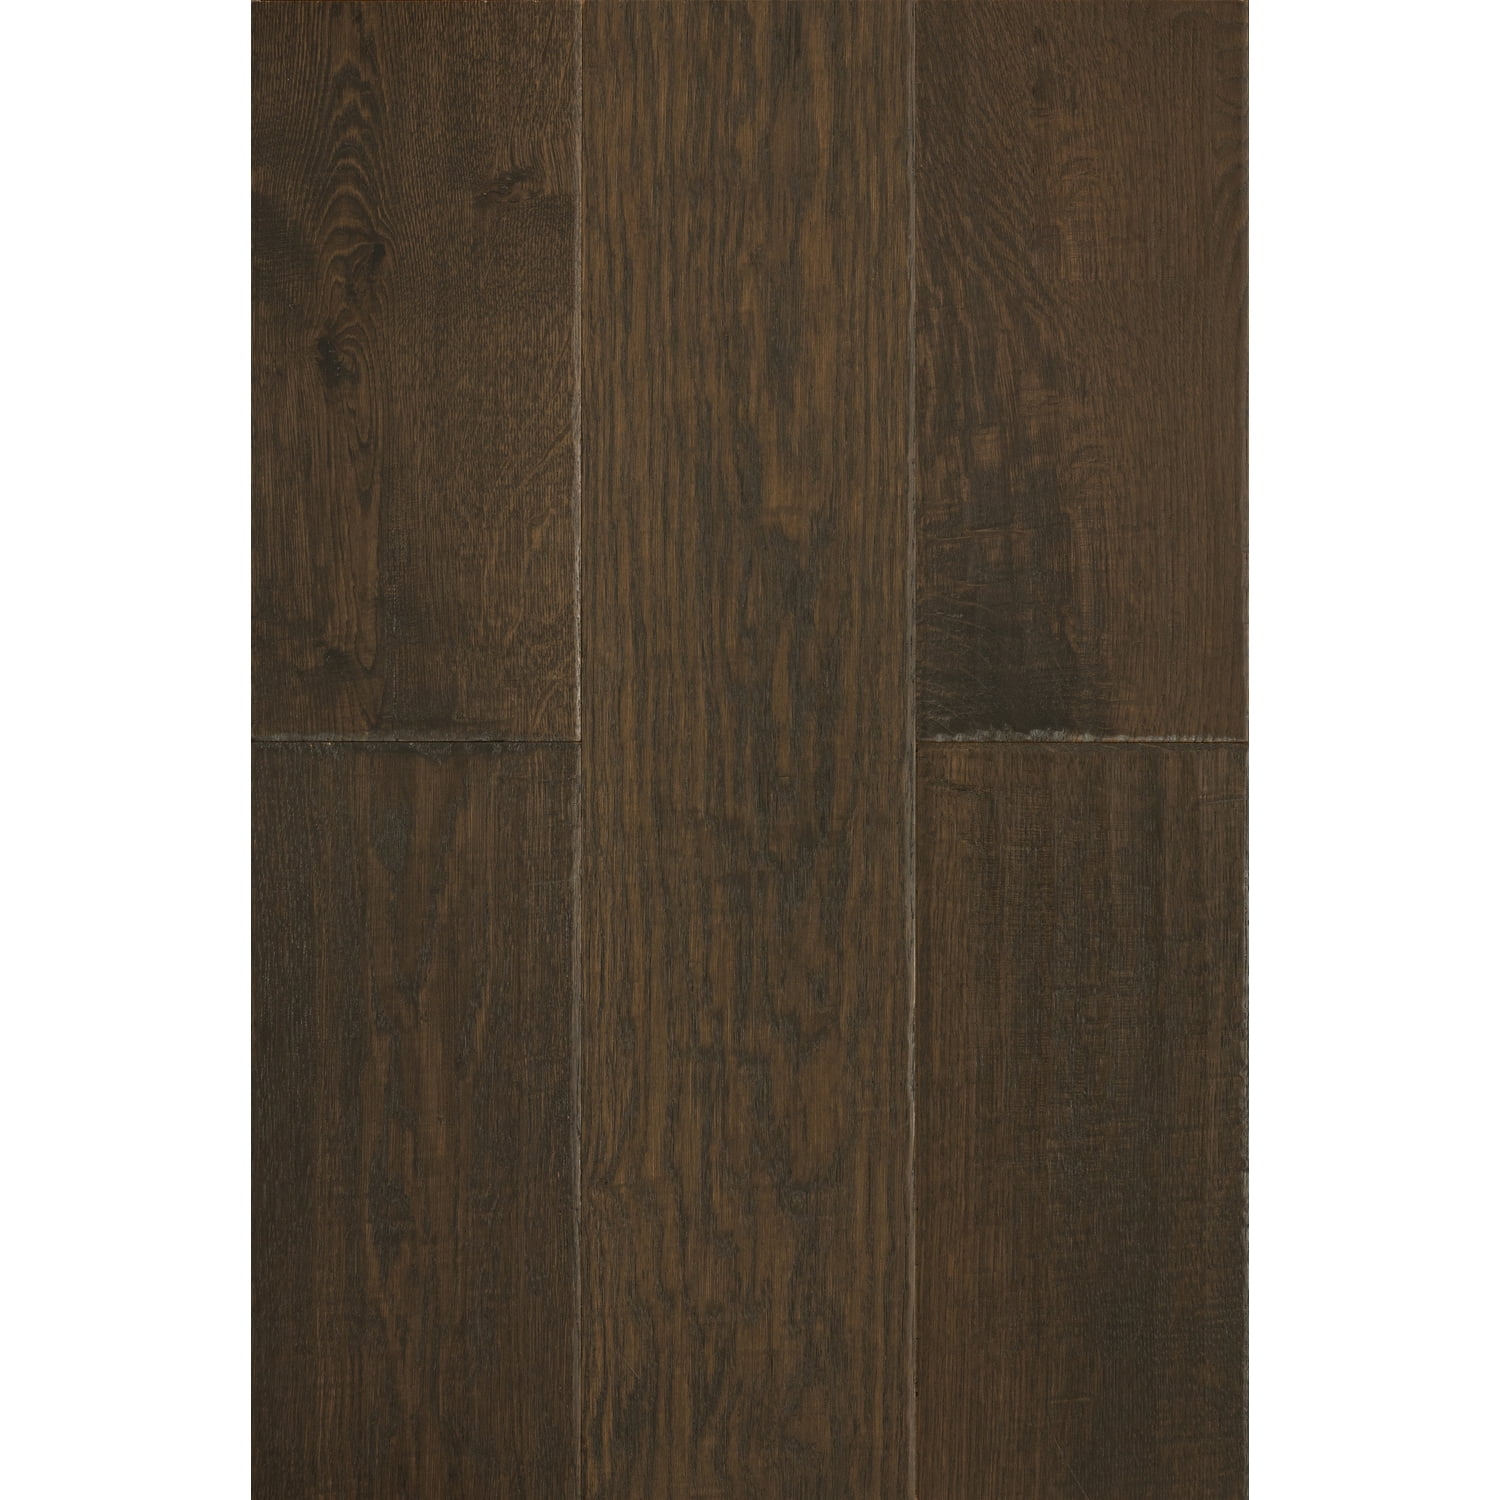 7 Hardwood Flooring In Oak Shadow, Premier Hardwood Floors